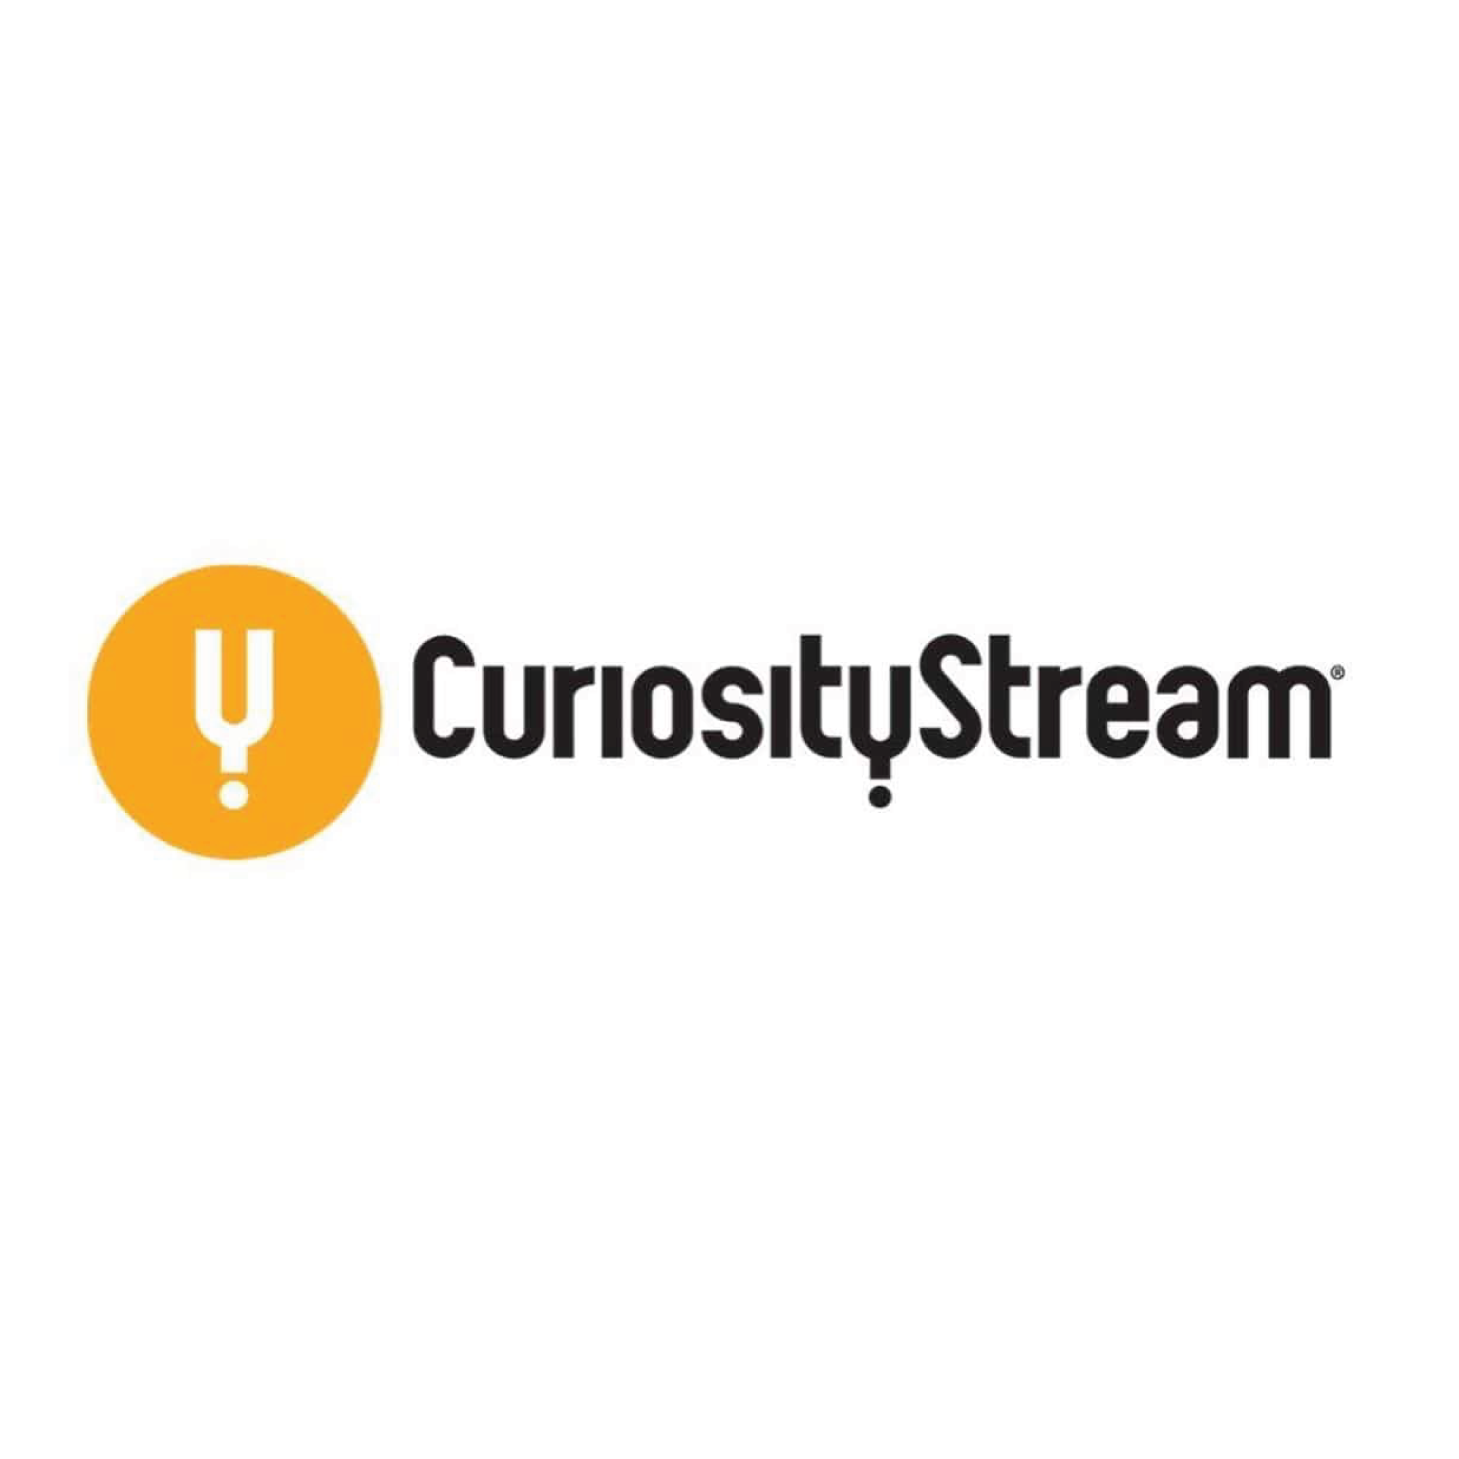 CuriosityStream code promo 